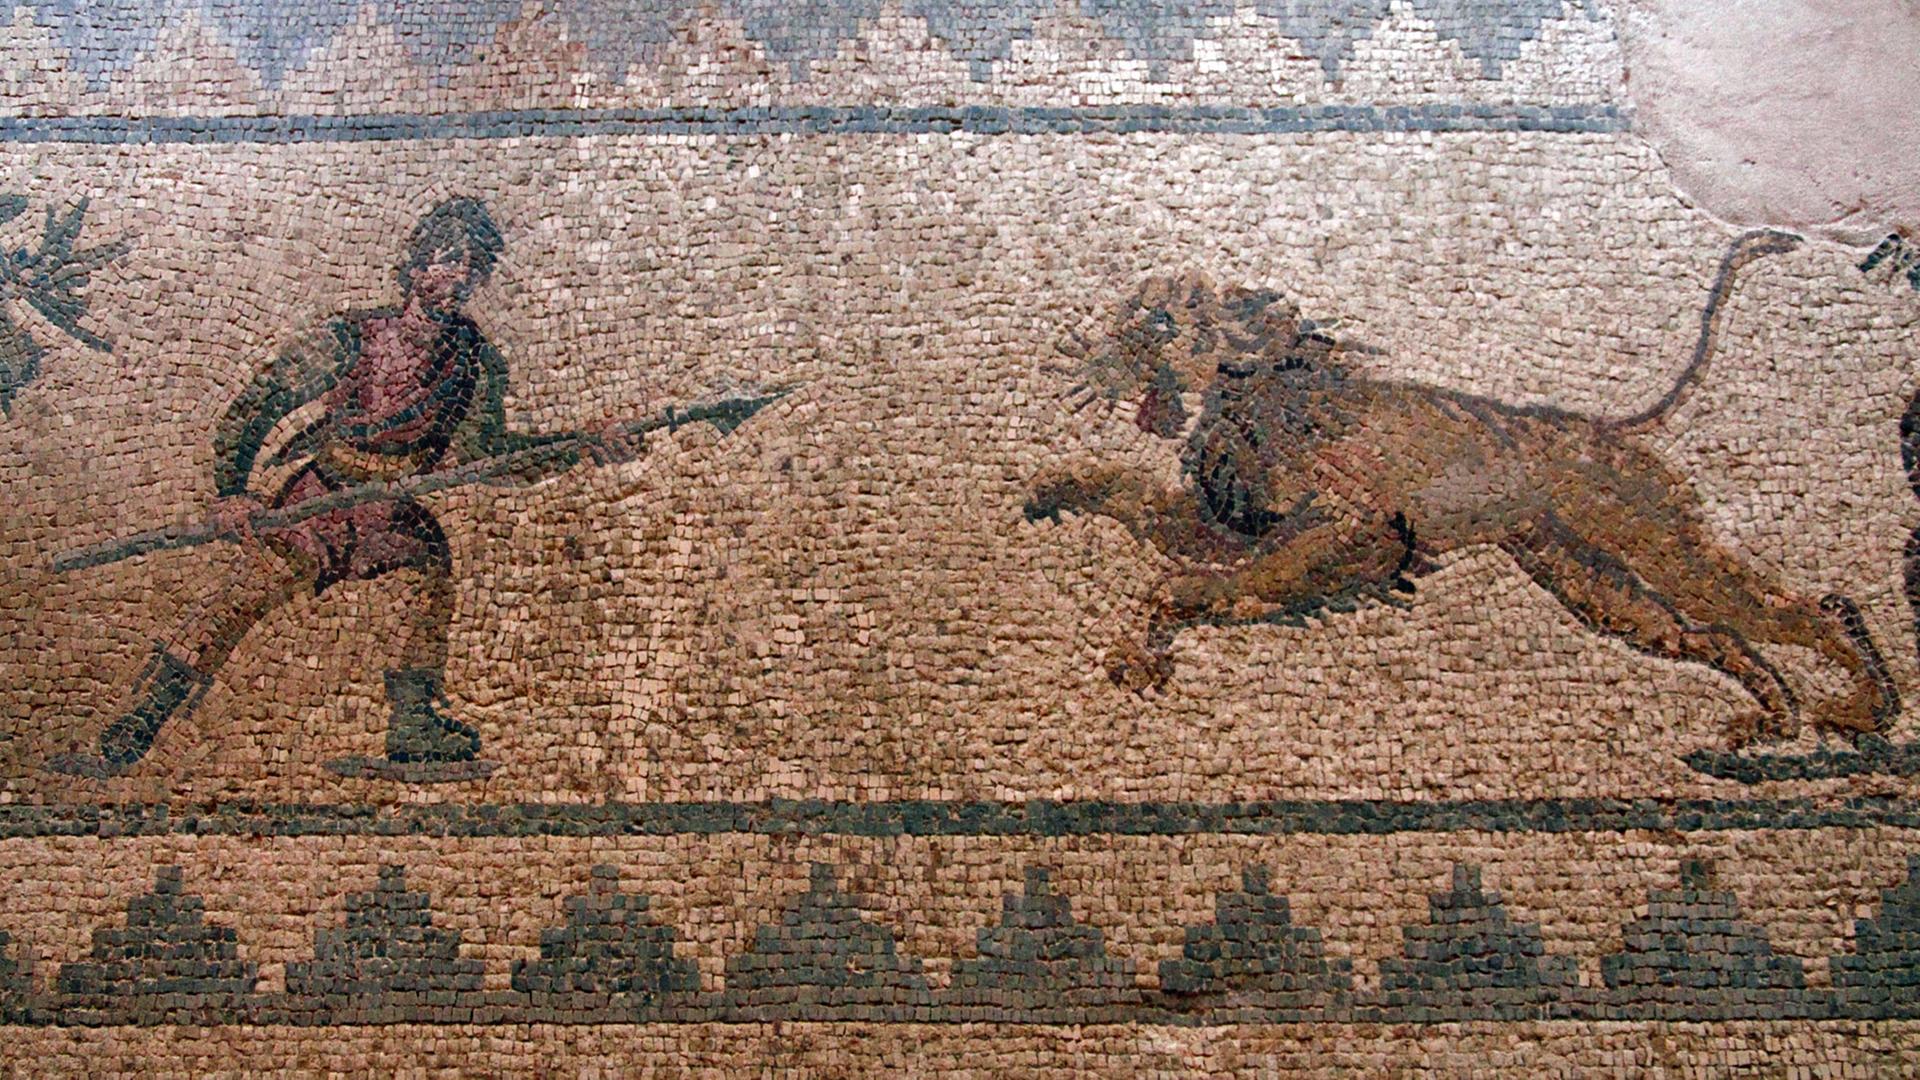 Mosaik "Ein Jäger greift mit dem Speer einen Löwen an", Haus des Dionysos, die südliche Porticus, Raum 12, Archäologischer Park, Paphos im griechischen Teil der Insel Zypern